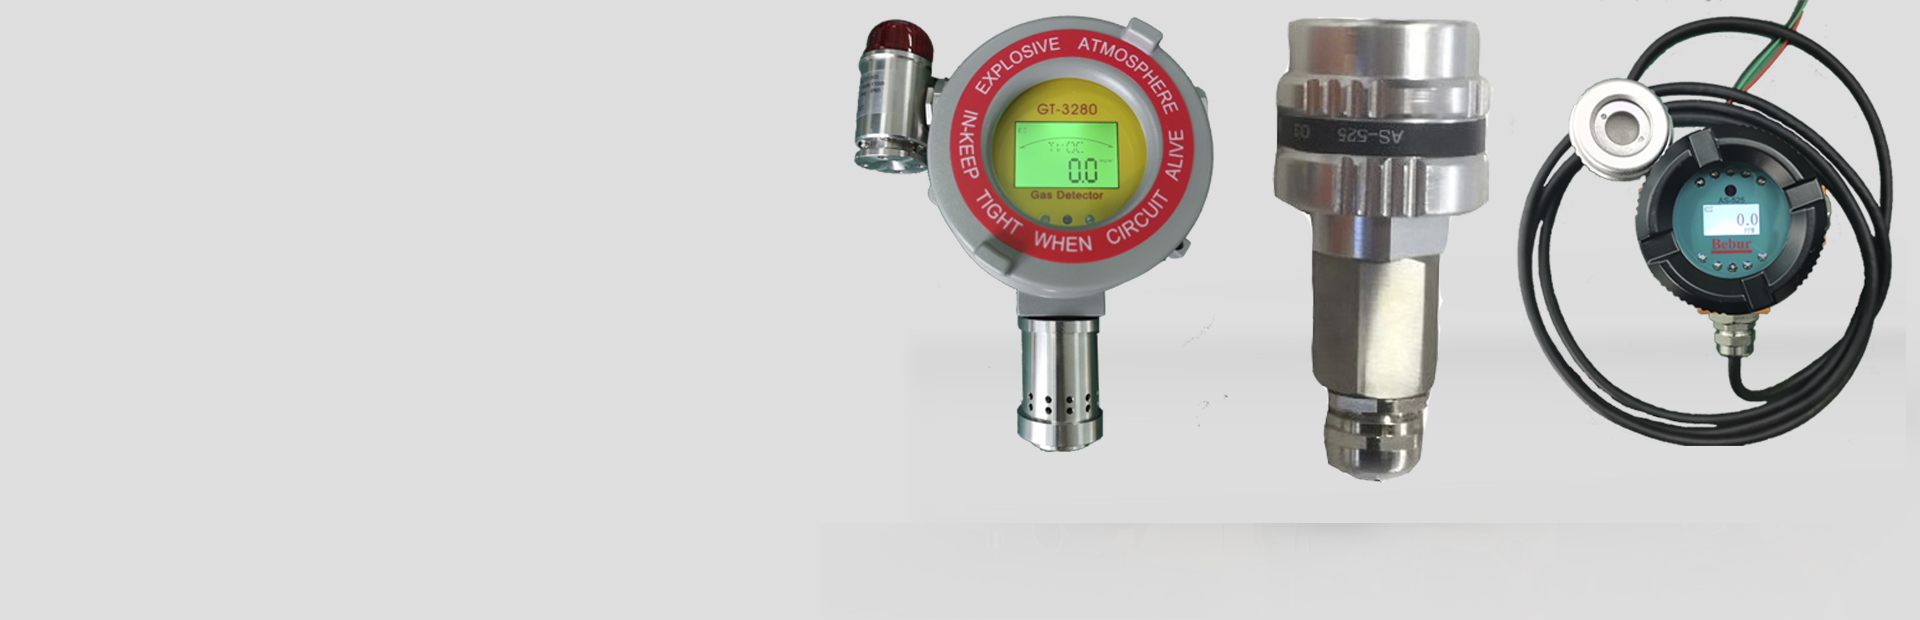 BT6108-OZ余臭氧分析仪系列产品